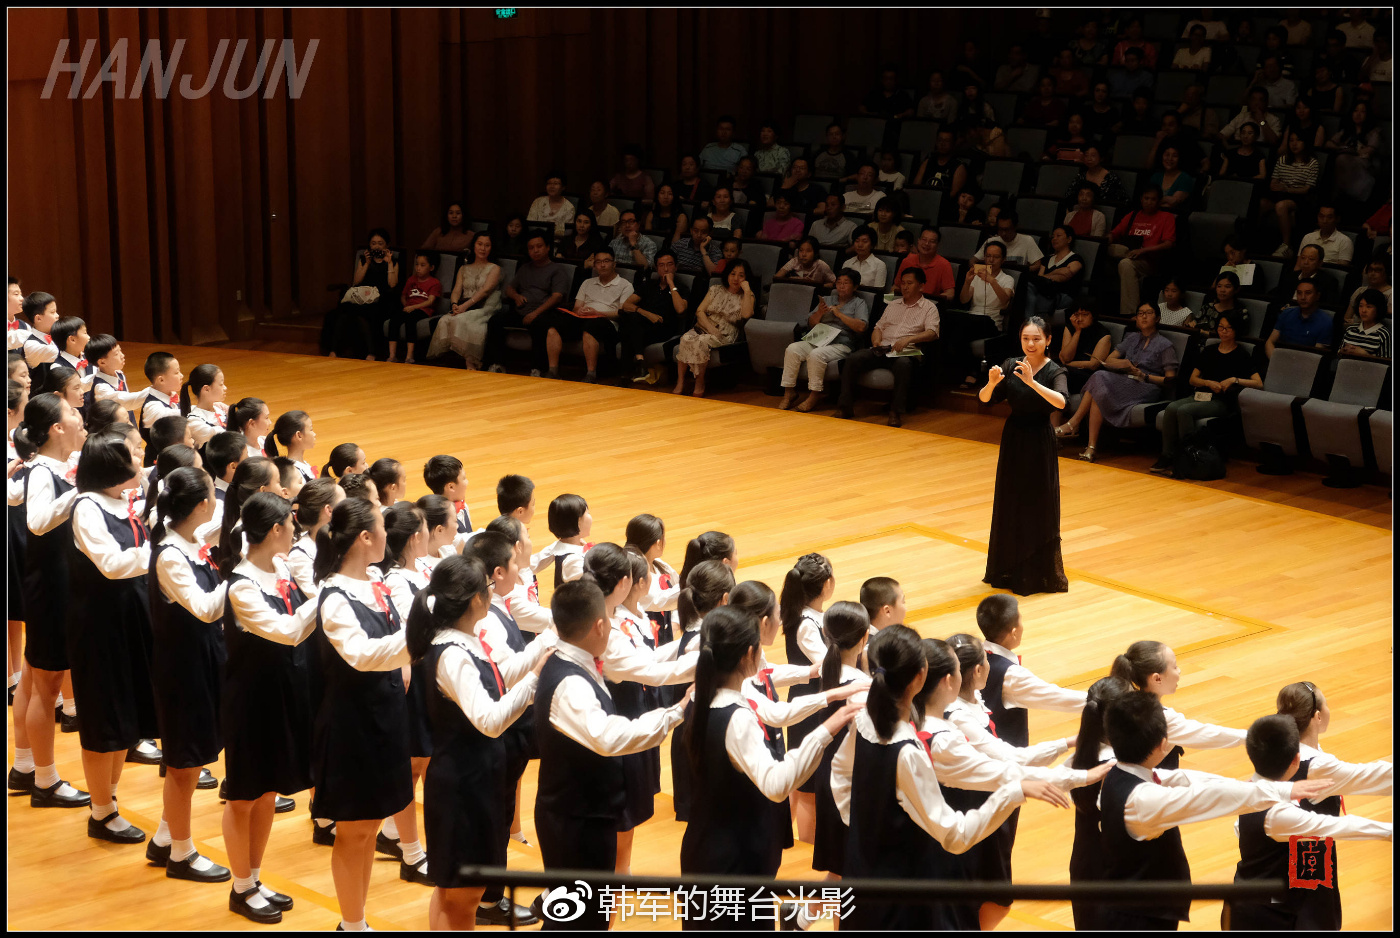 "我们的歌"中国交响乐团附属少年及女子合唱团成立35周年音乐会